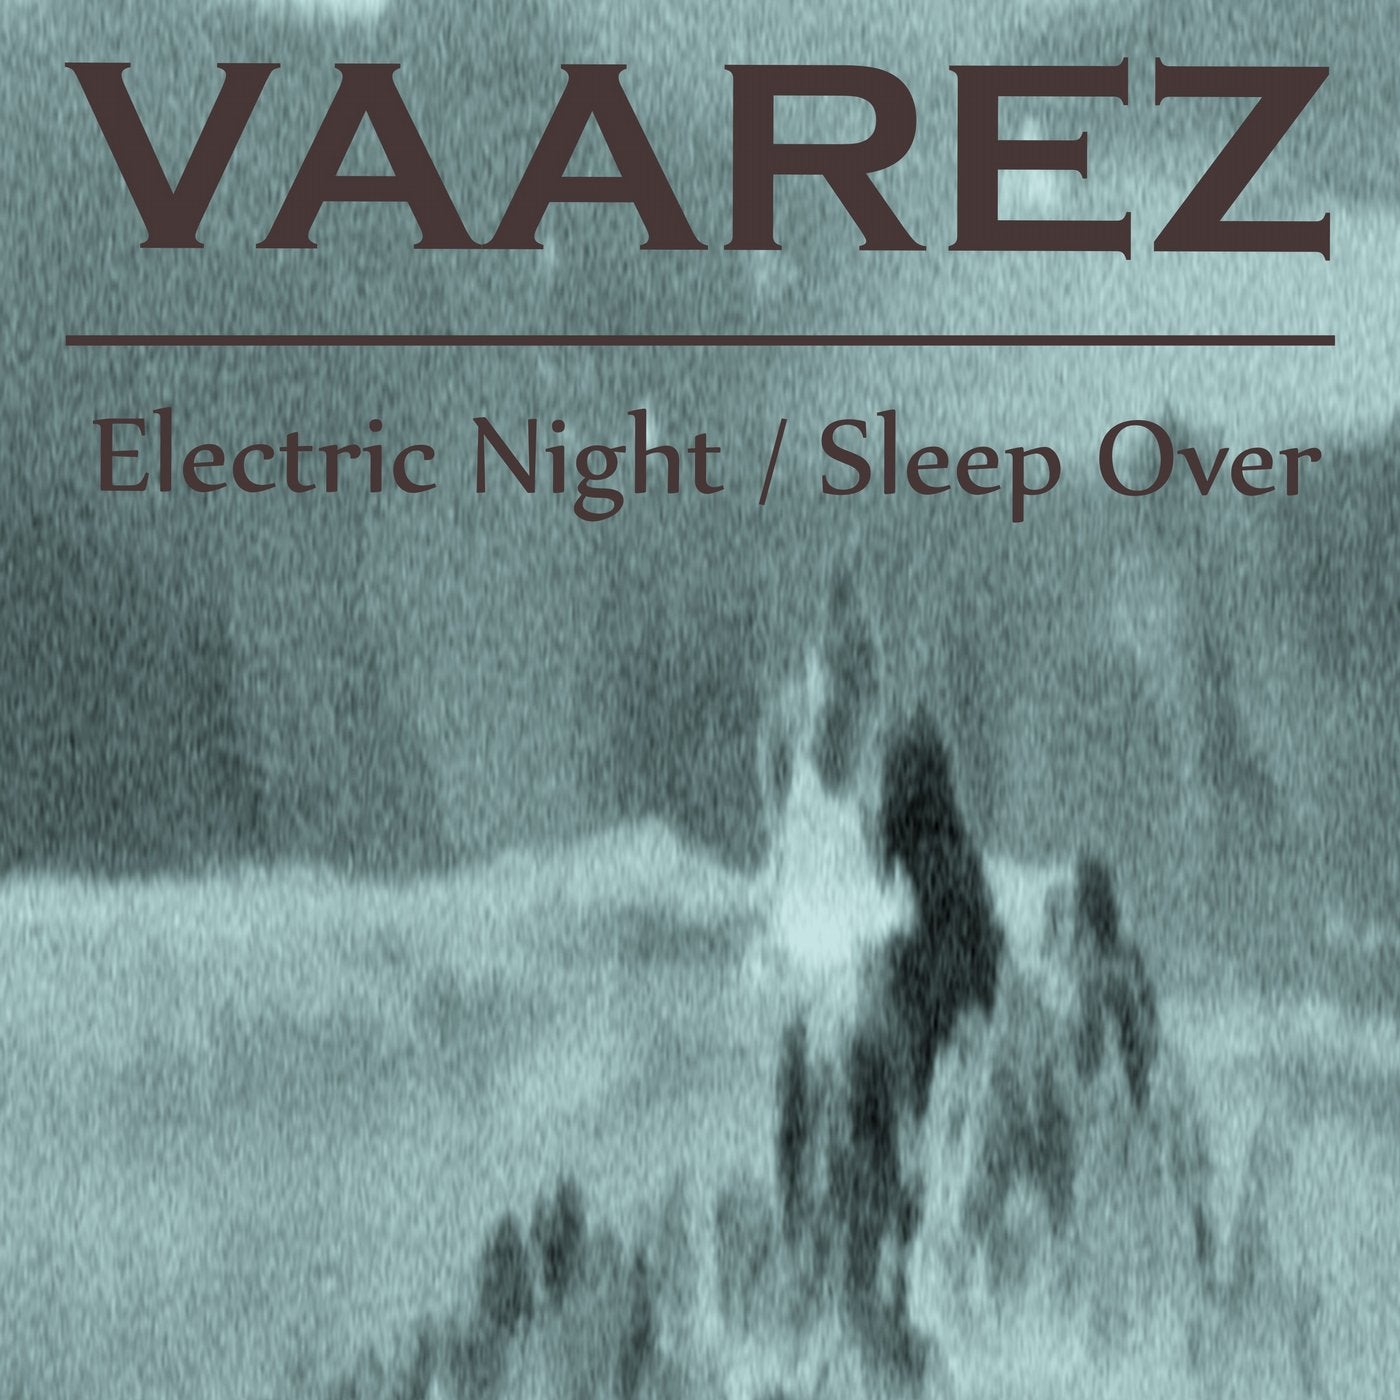 Electric Night / Sleep Over